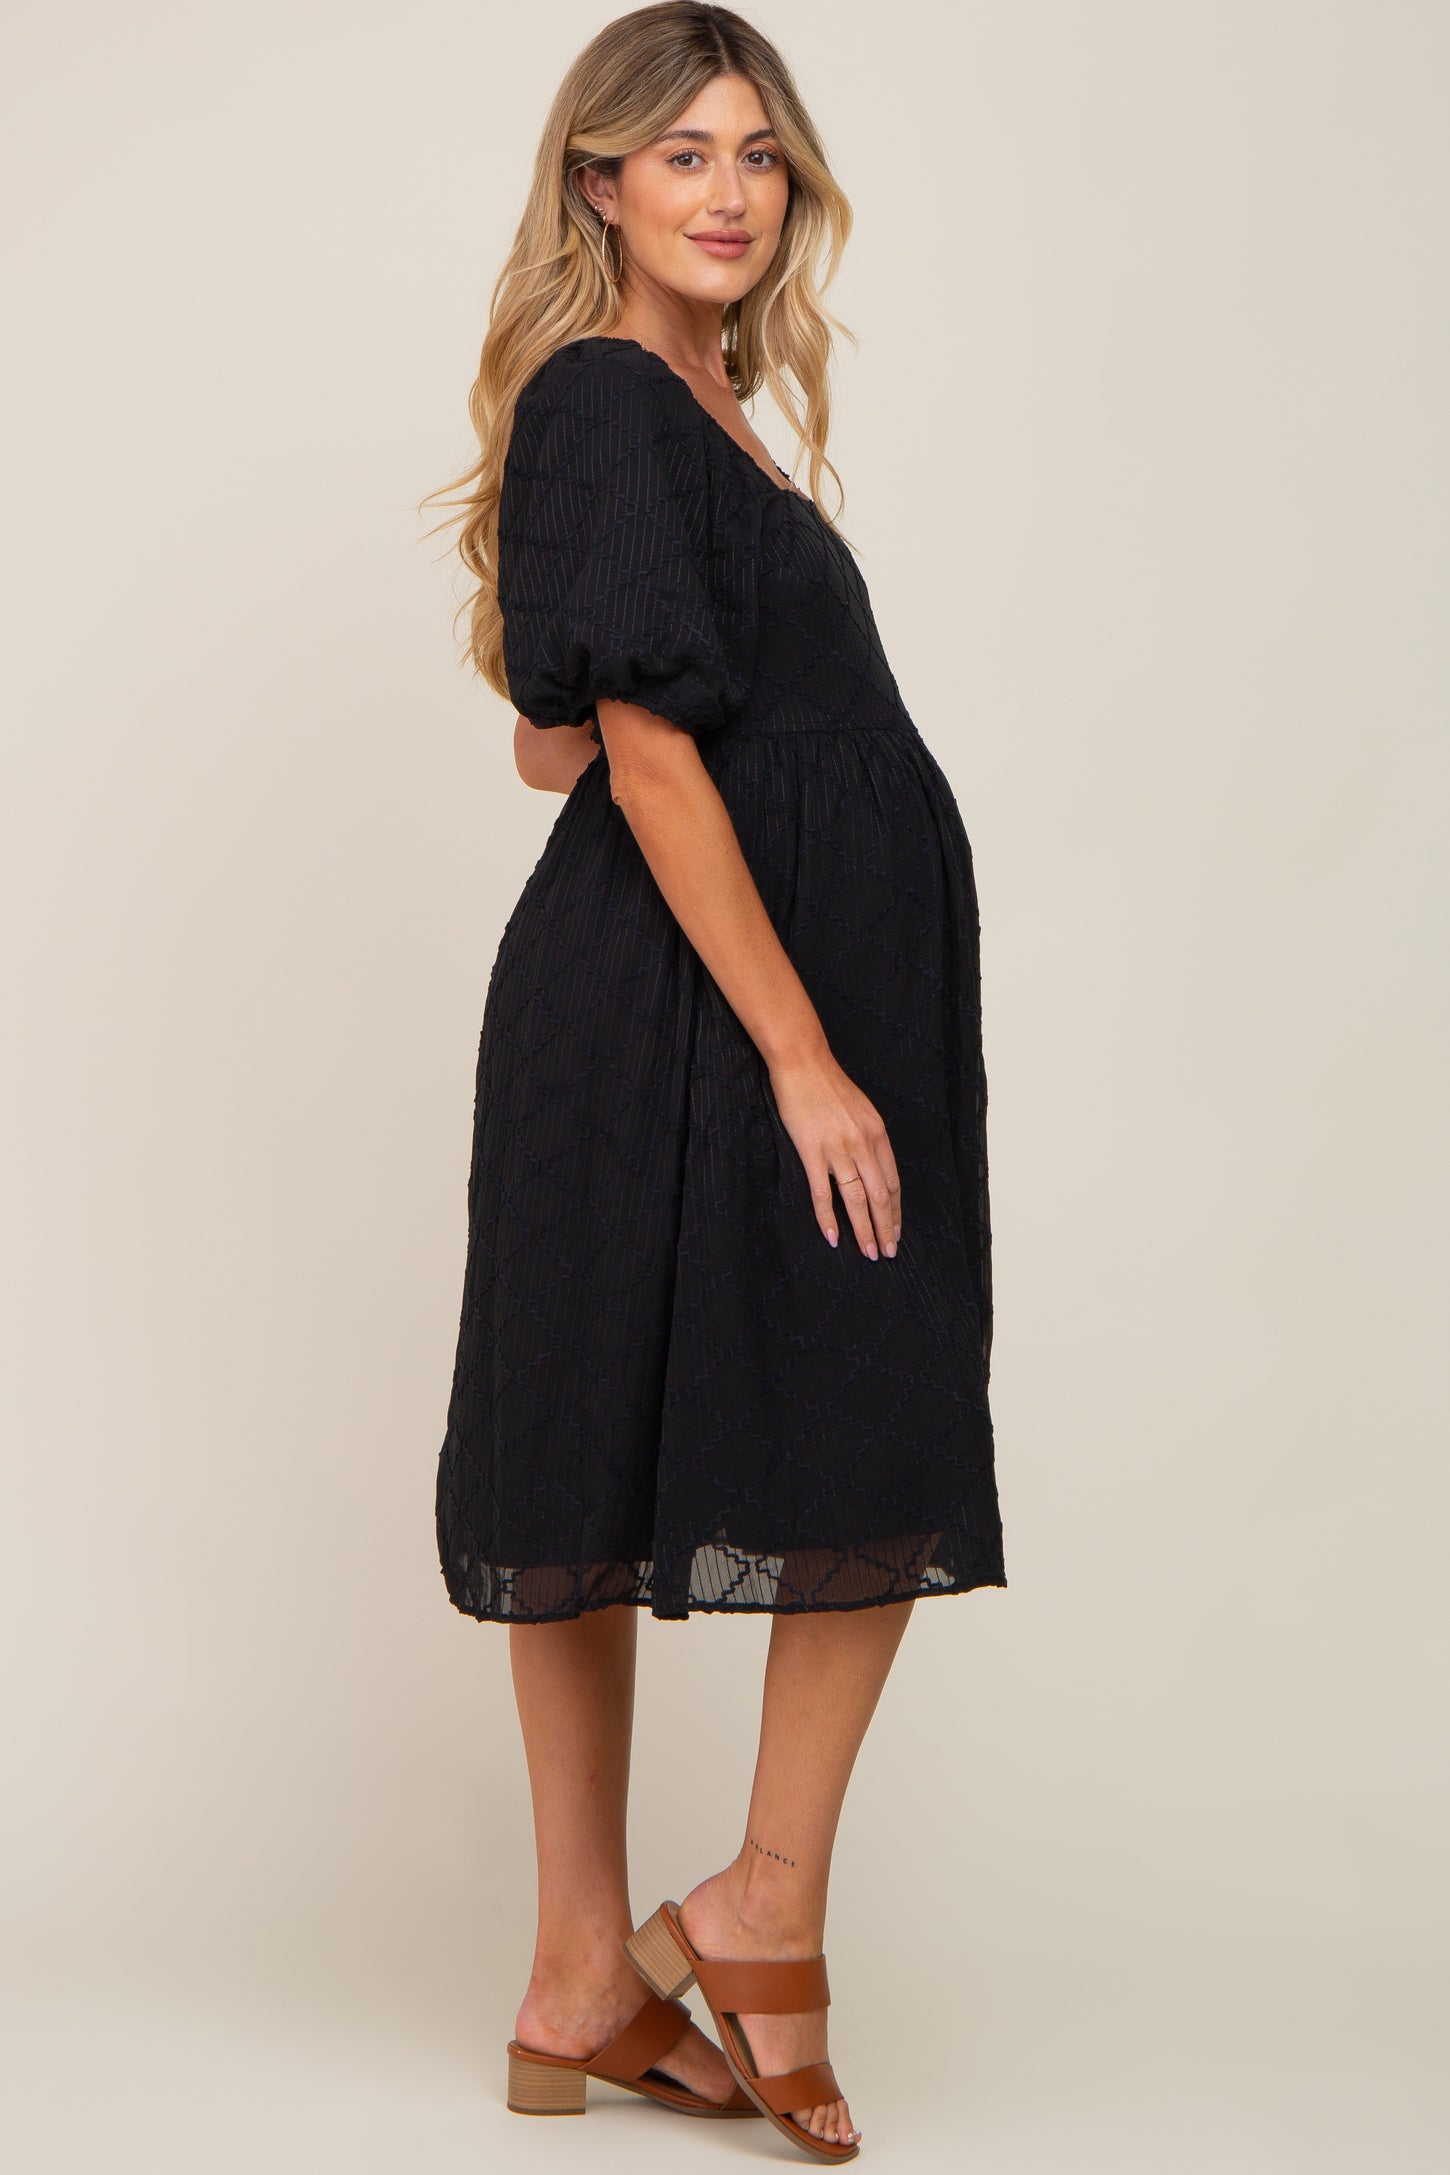 Black Striped Textured Chiffon Maternity Midi Dress